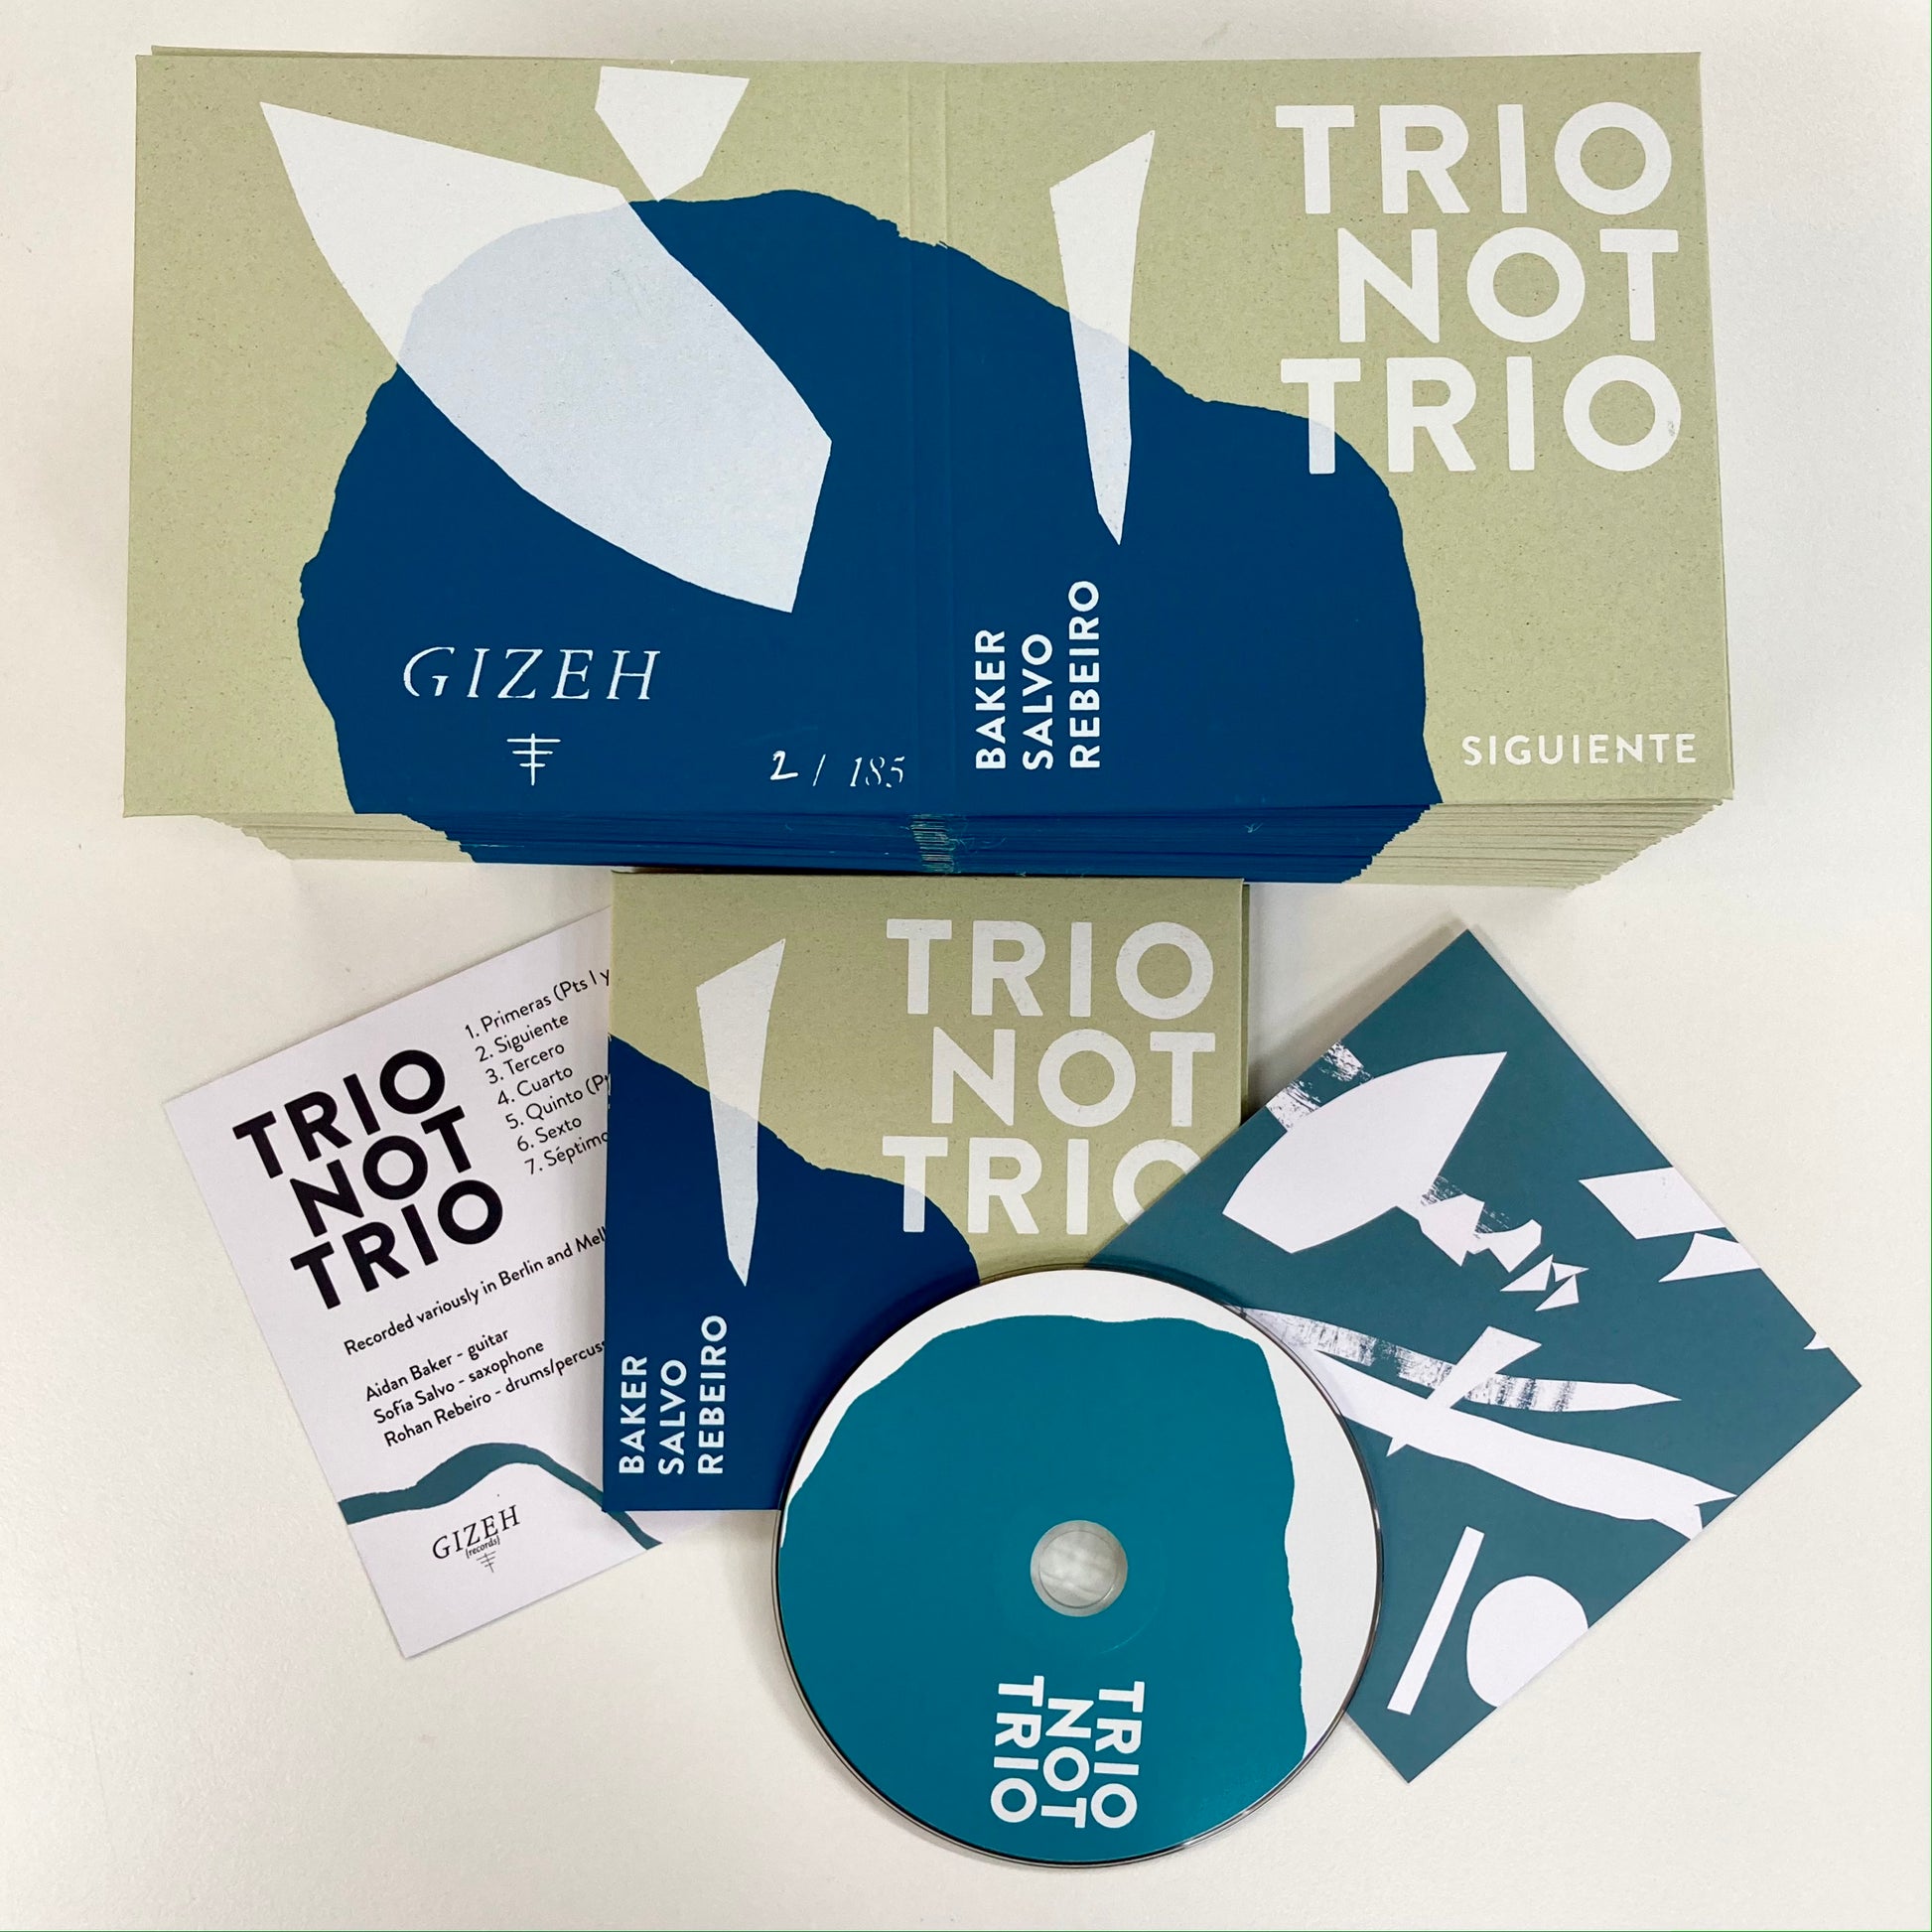 Trio Not Trio - Yn Gyntaf, Aidan Baker, Stacy Taylor, John Colpitts